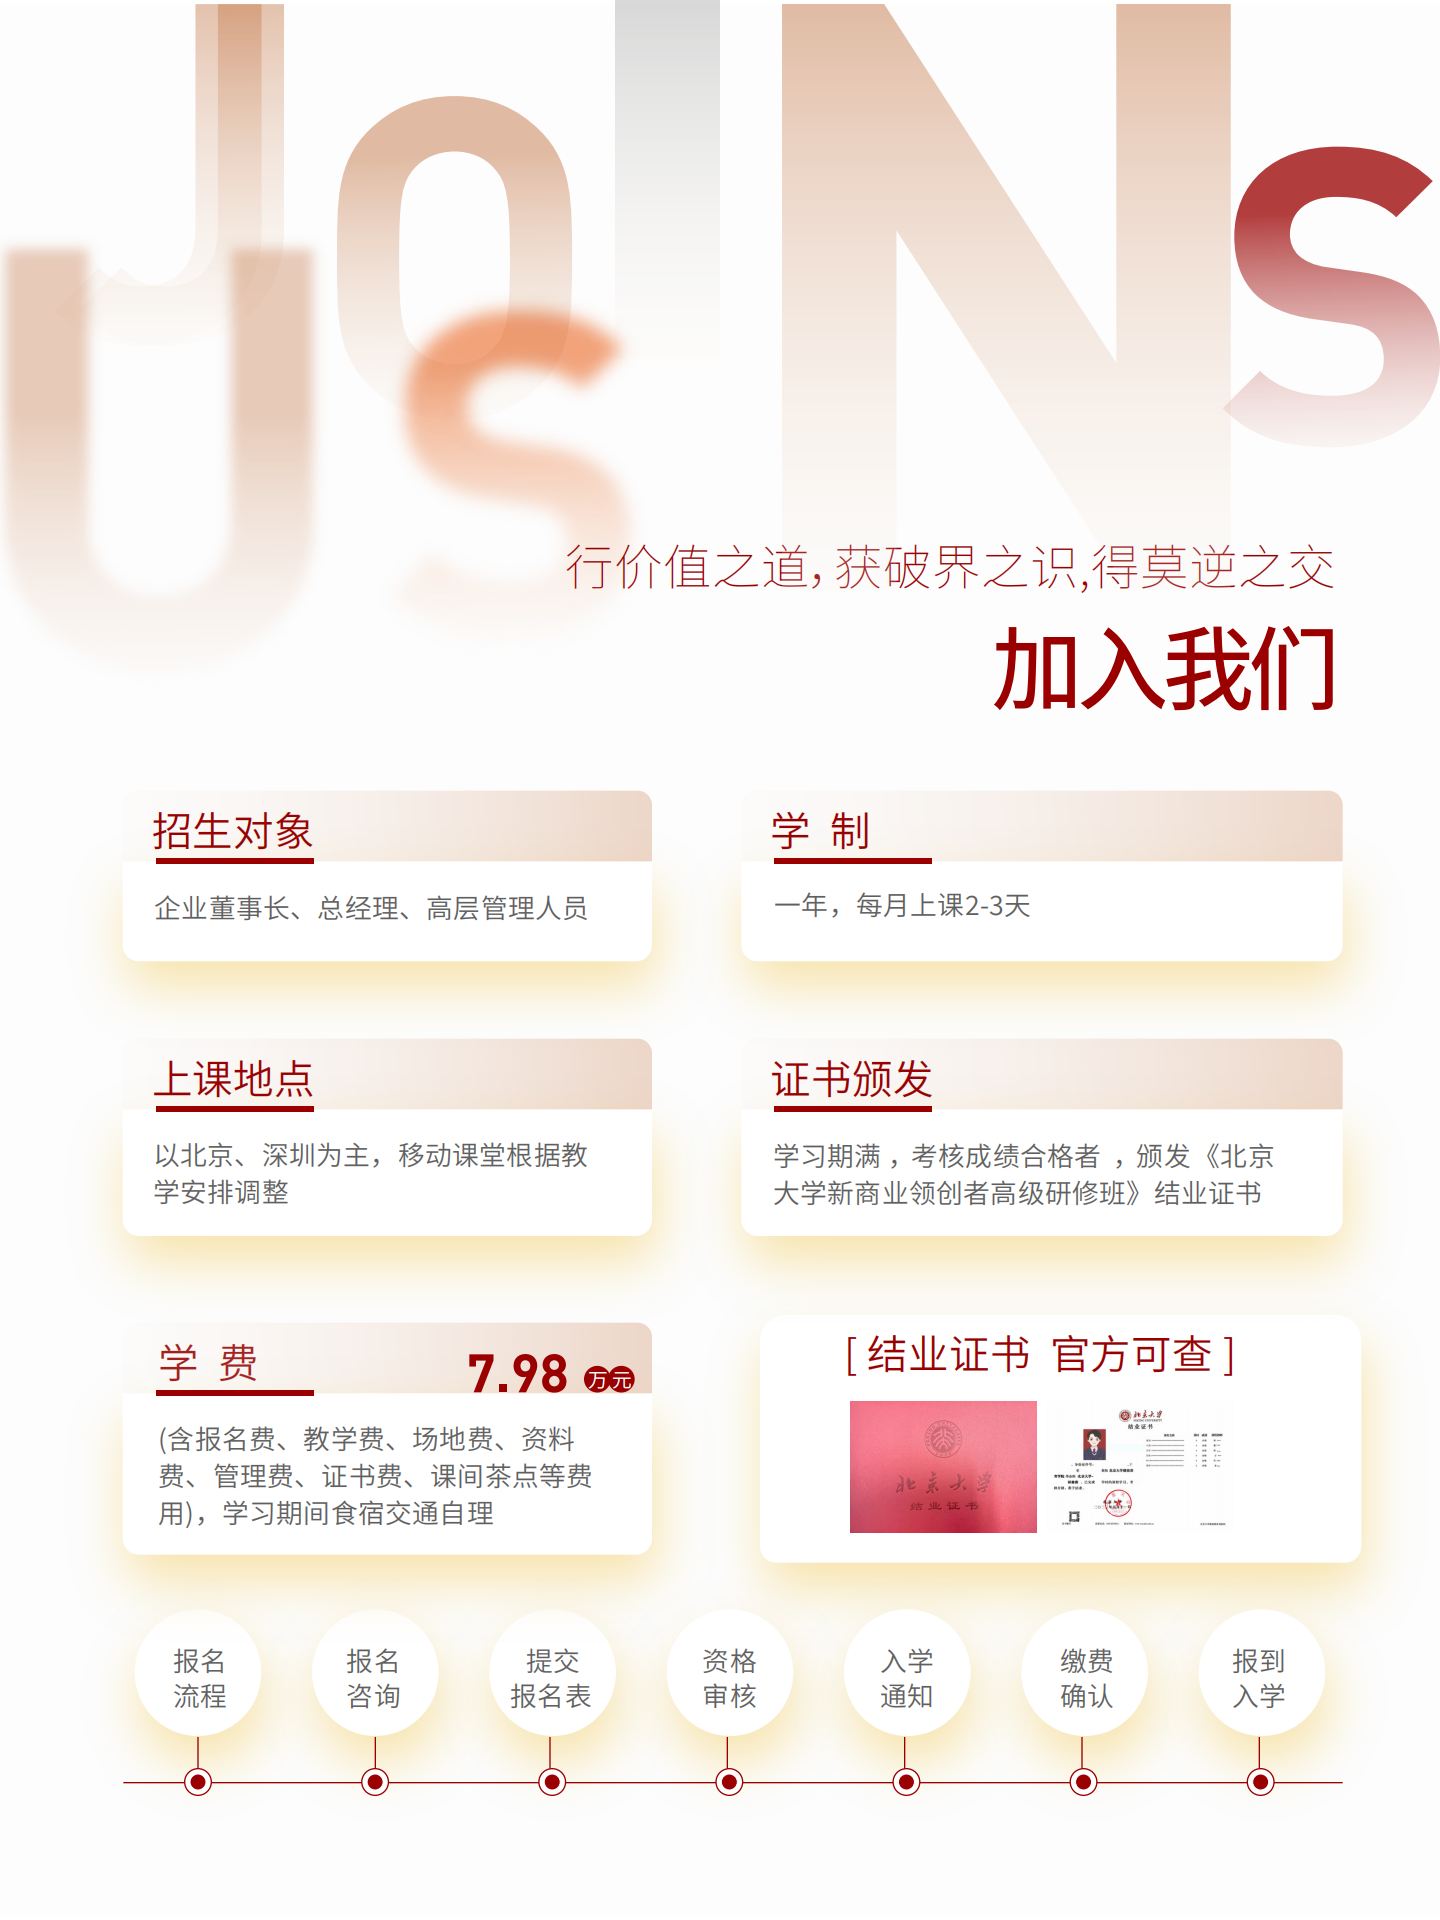 北京大学新商业领创者项目(4)_07.png